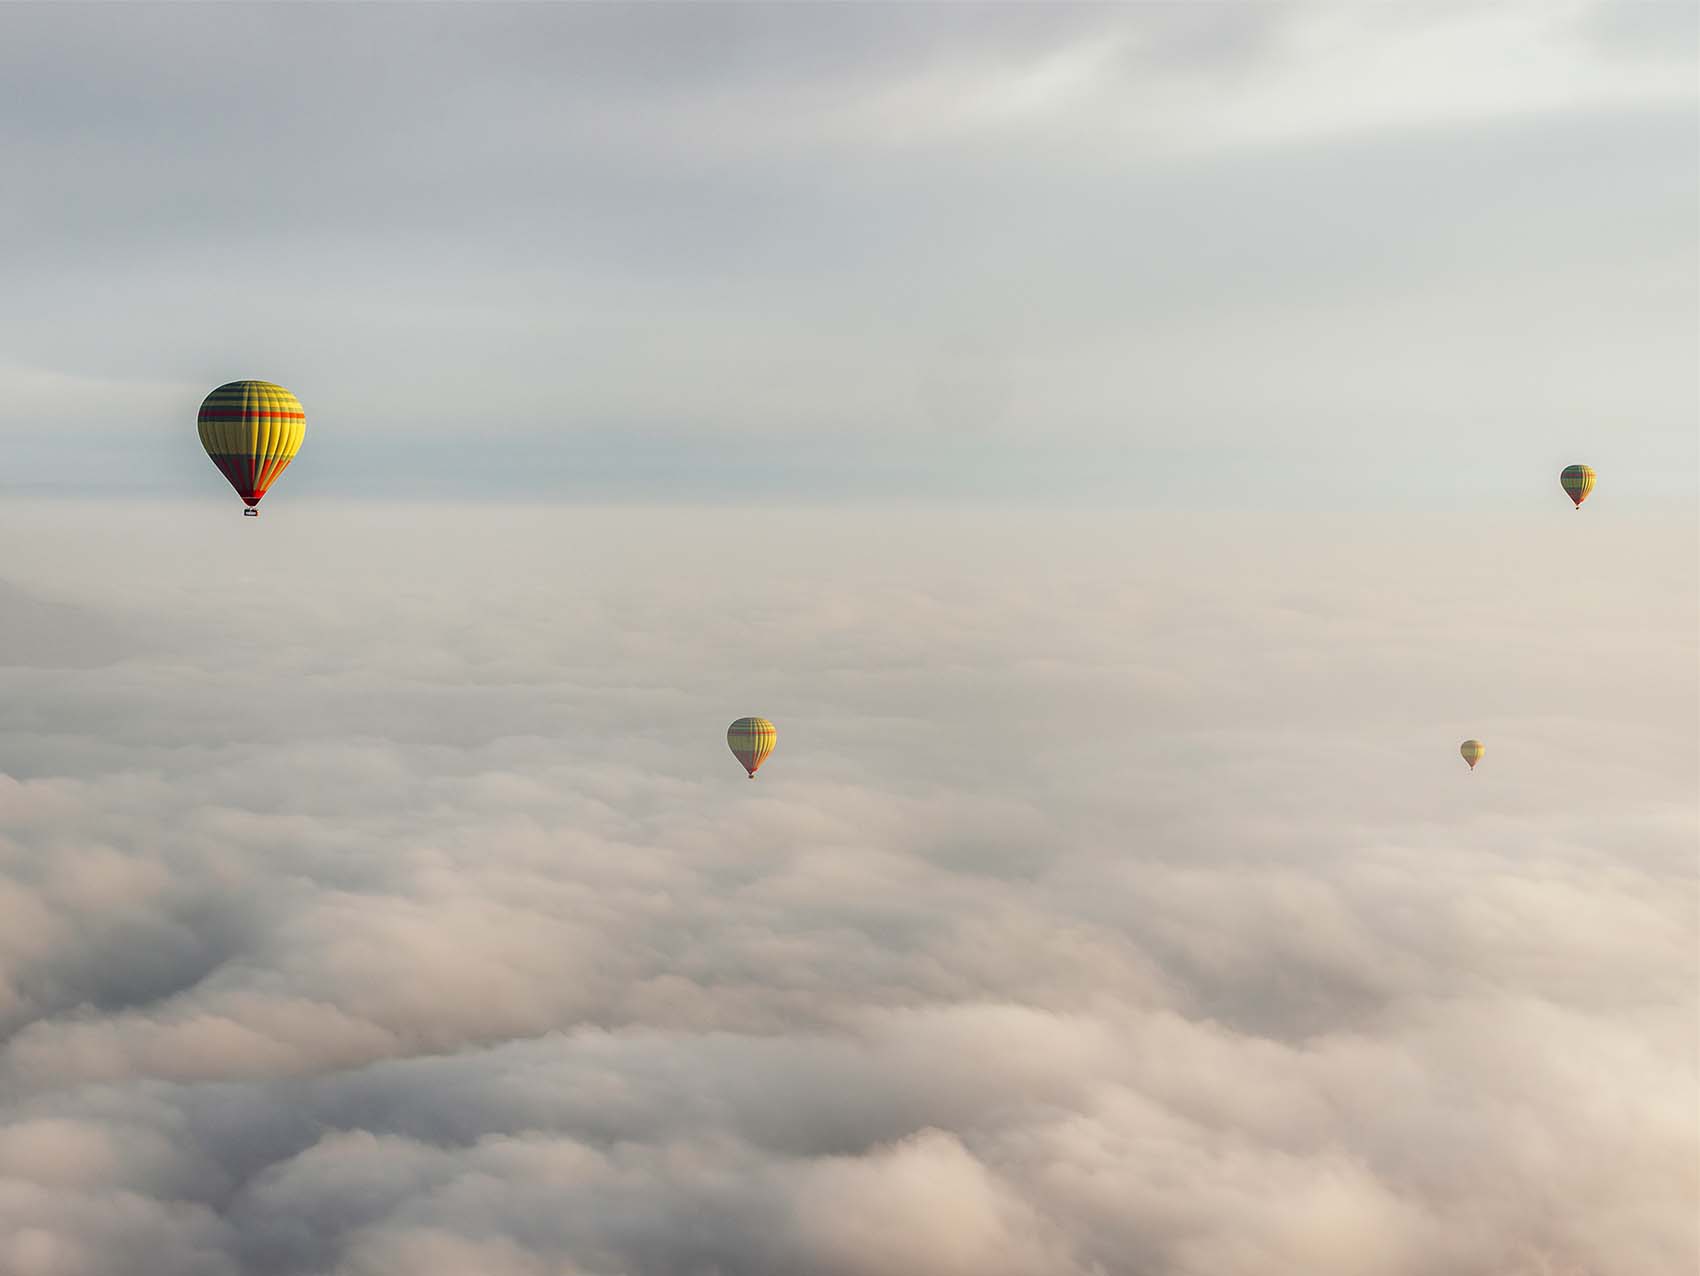 Vol en montgolfière à Marrakech - Photo prise au dessus des nuages